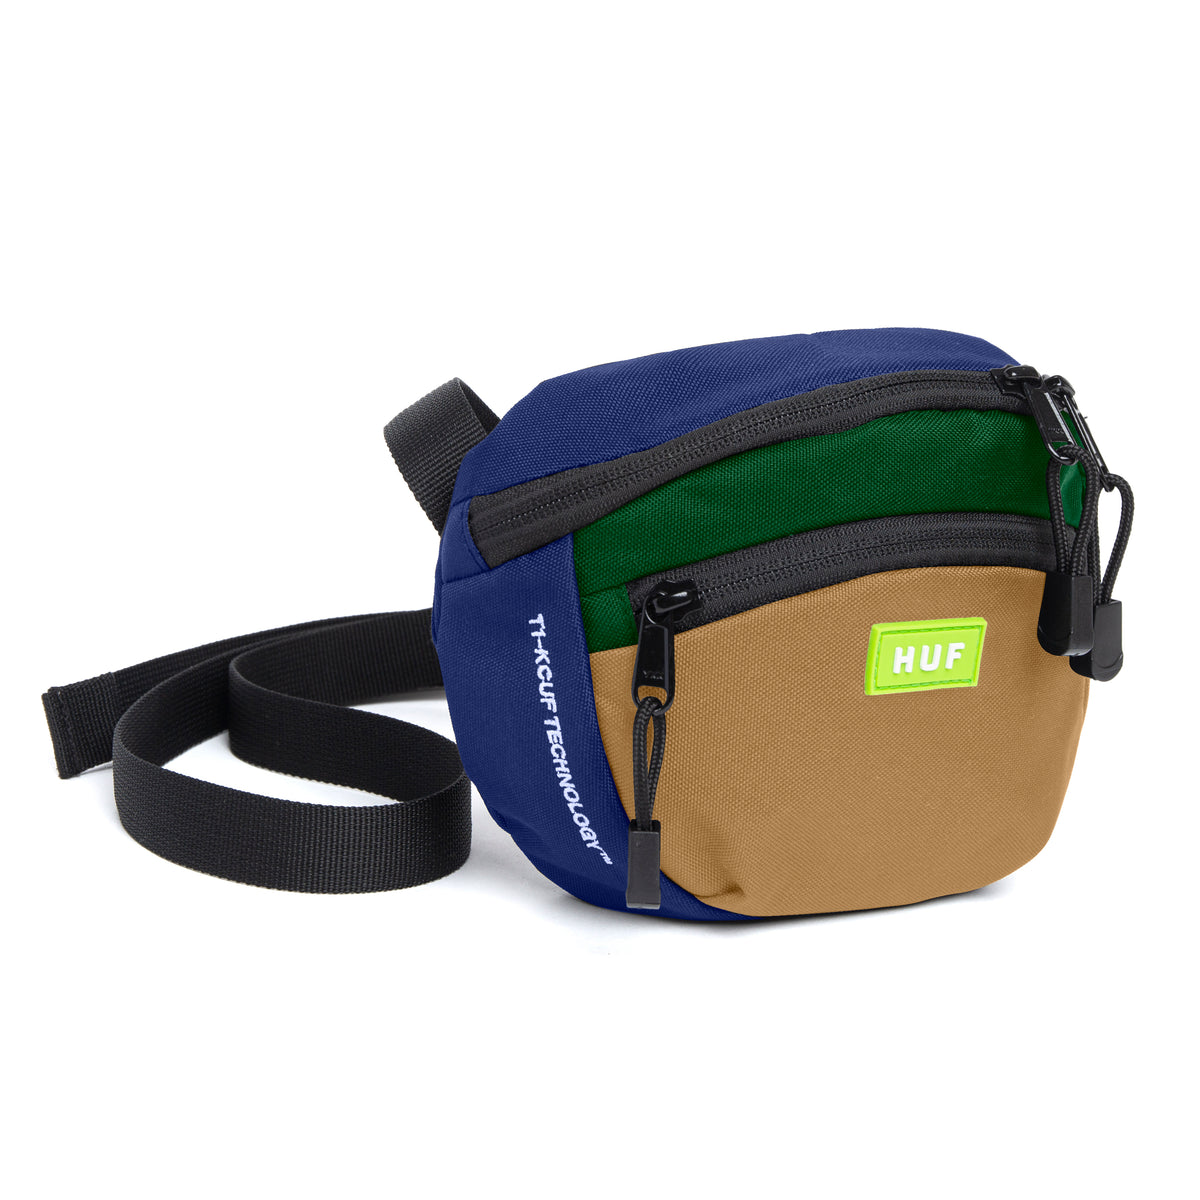 Huf Bunker Shoulder Bag - Blue/Green